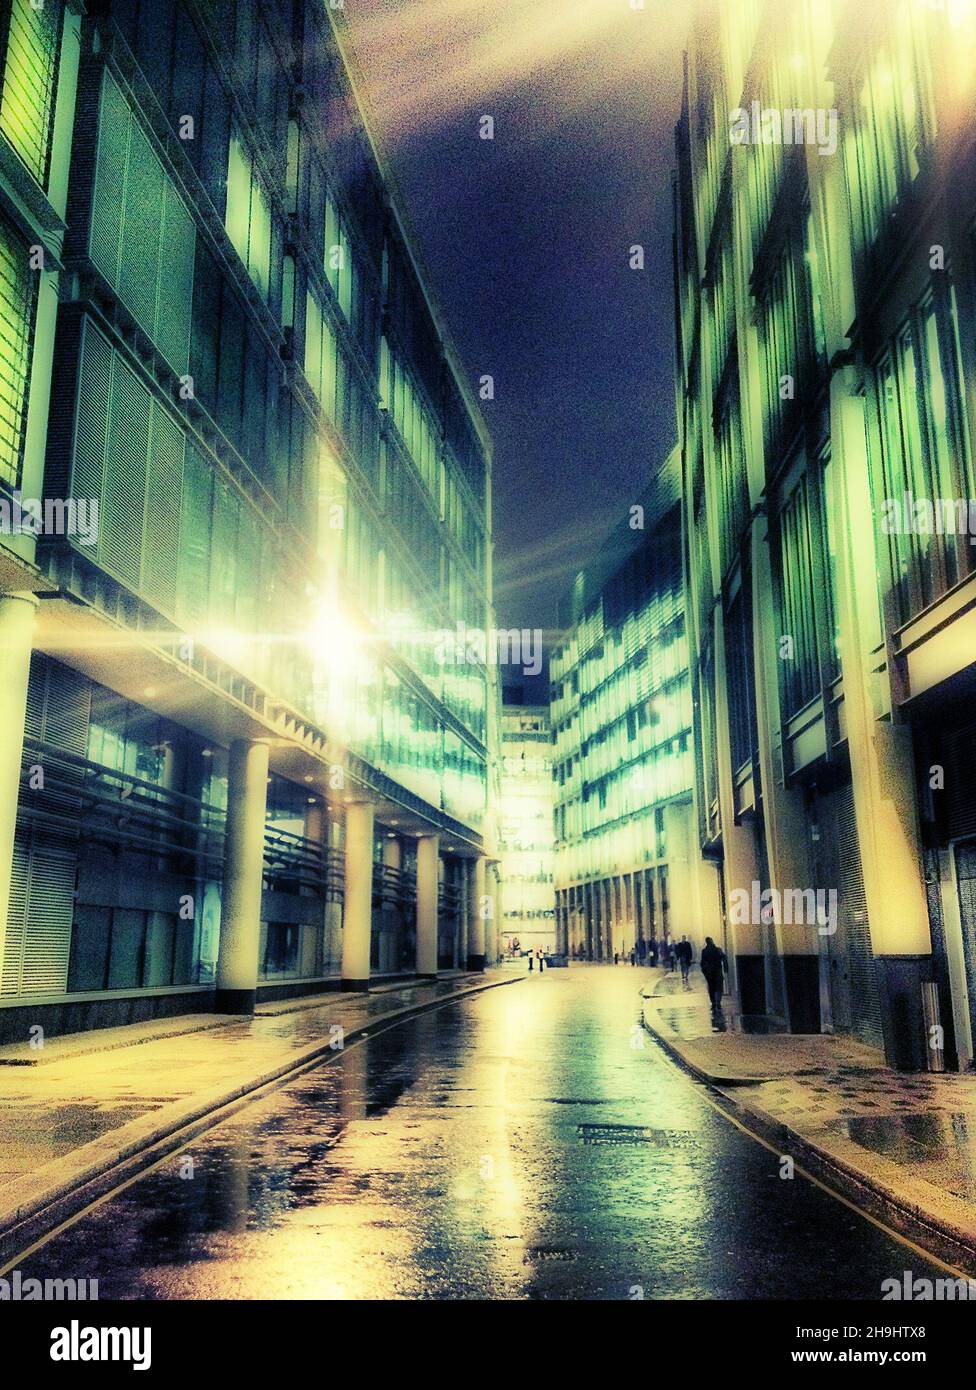 Une vue générale de Milk Street dans la ville de Londres, une image prise à l'aide d'une application appelée Pro HDR et traitée à l'aide du filtre Orton dans une application appelée Dynamic Light (faisant partie d'une série d'images expérimentales prises et traitées sur l'iPhone) Banque D'Images